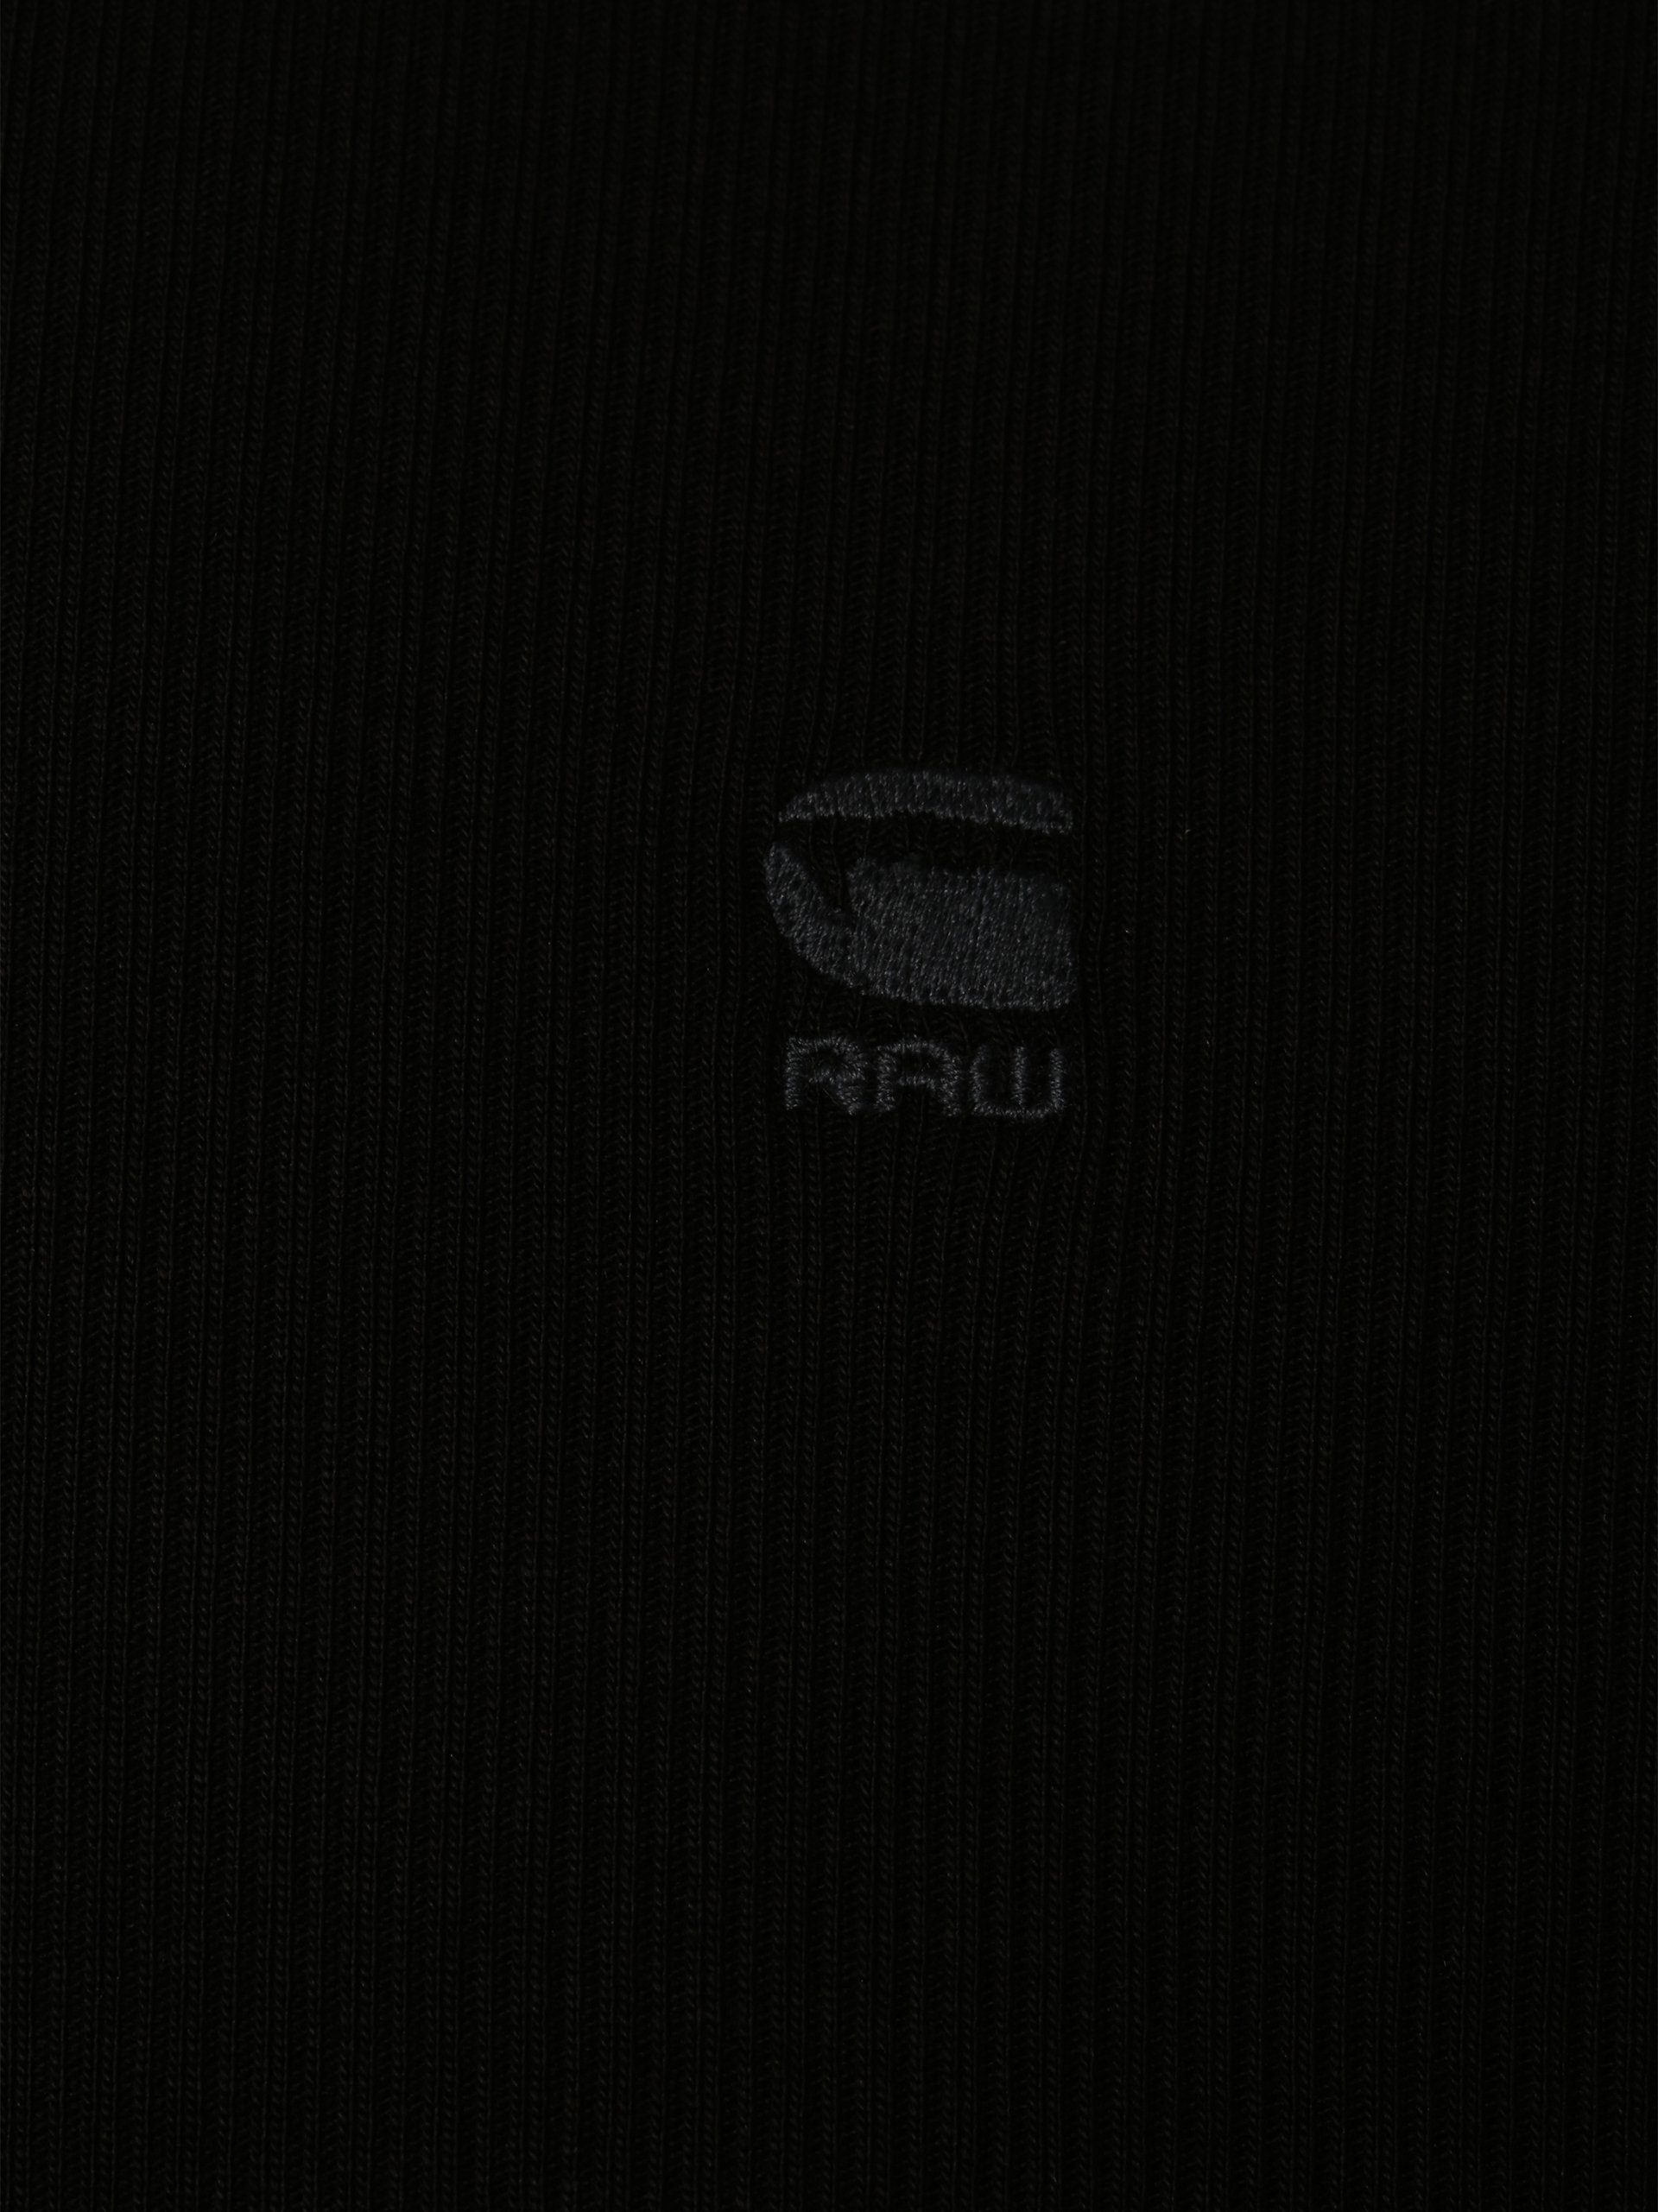 RAW G-Star schwarz T-Shirt Lash